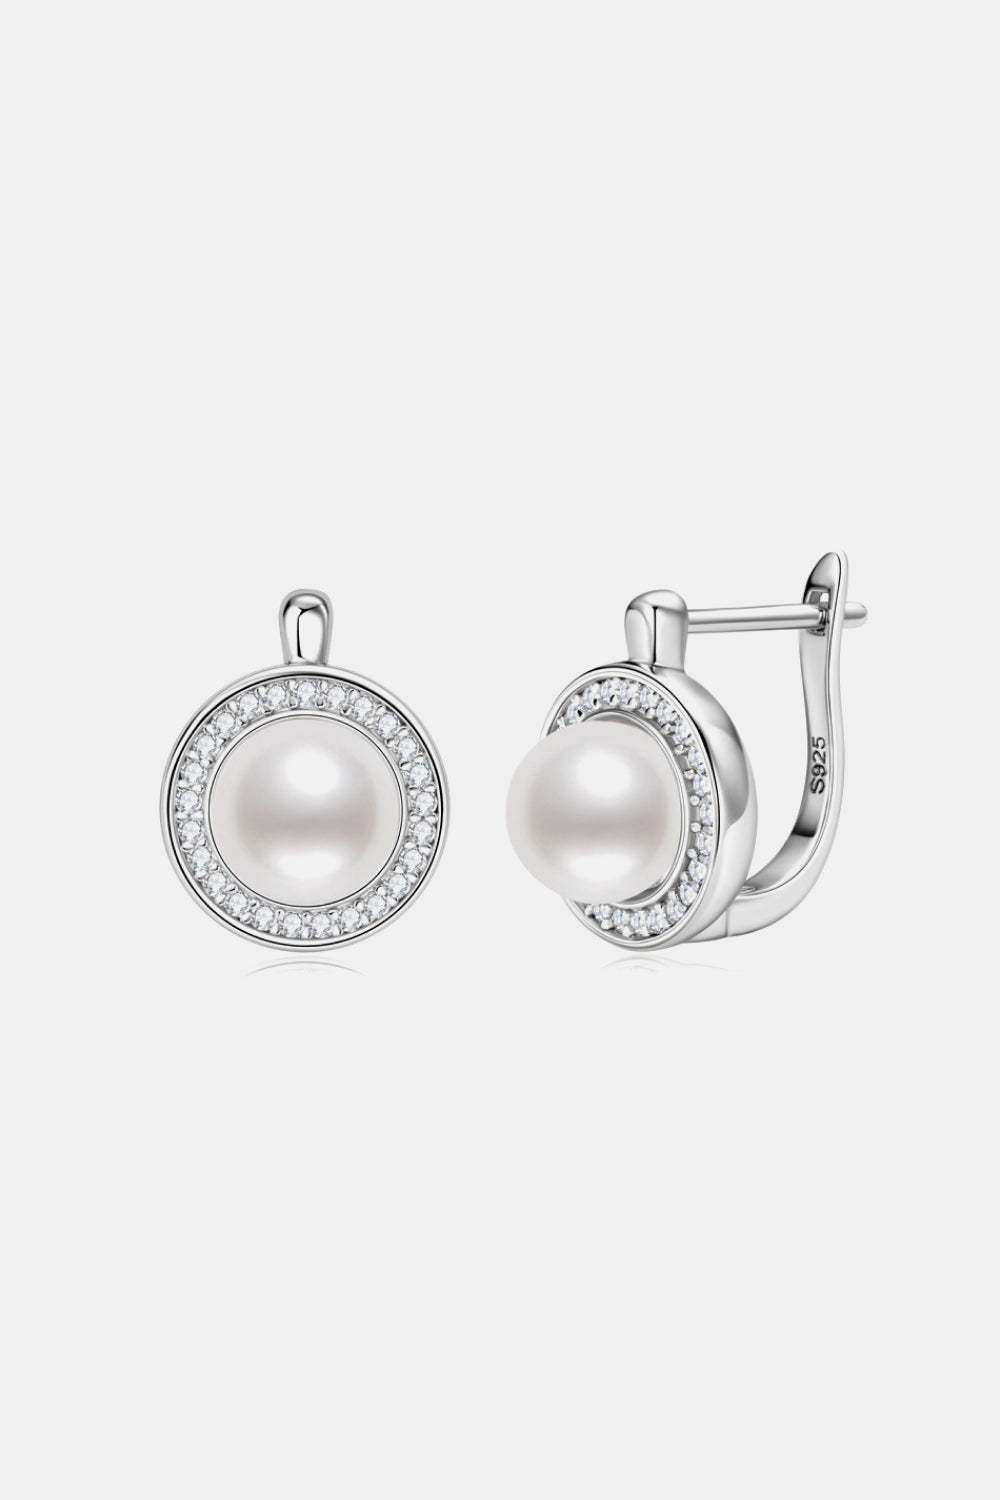 Elegant Pearl Essence Moissanite Sterling Earrings - ZISK Shop  